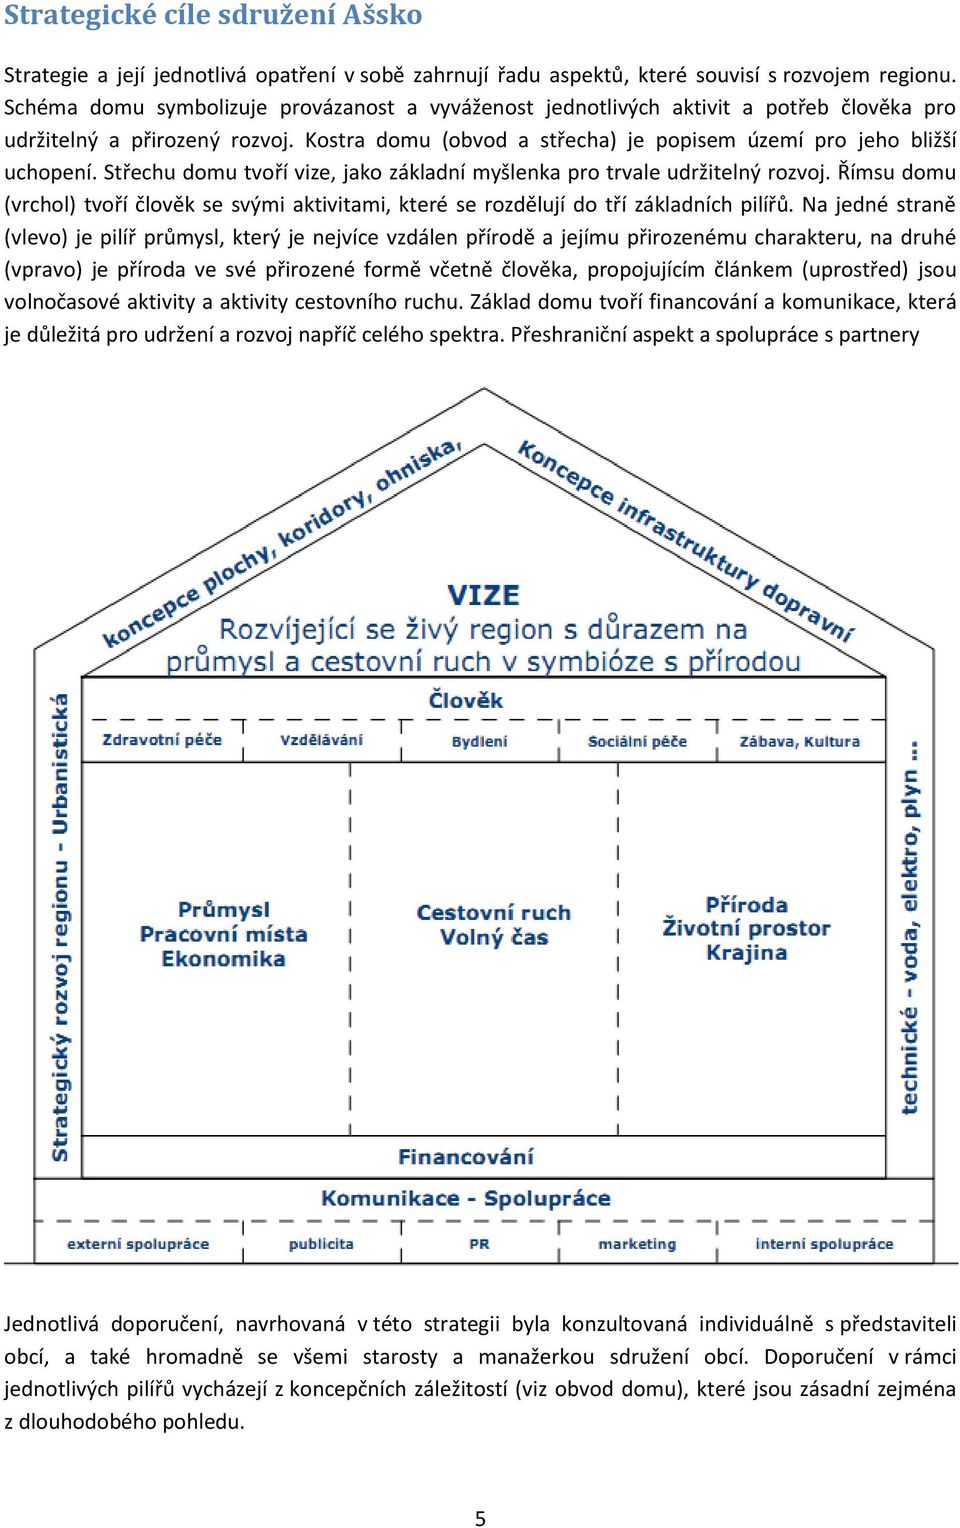 Střechu domu tvoří vize, jako základní myšlenka pro trvale udržitelný rozvoj. Římsu domu (vrchol) tvoří člověk se svými aktivitami, které se rozdělují do tří základních pilířů.